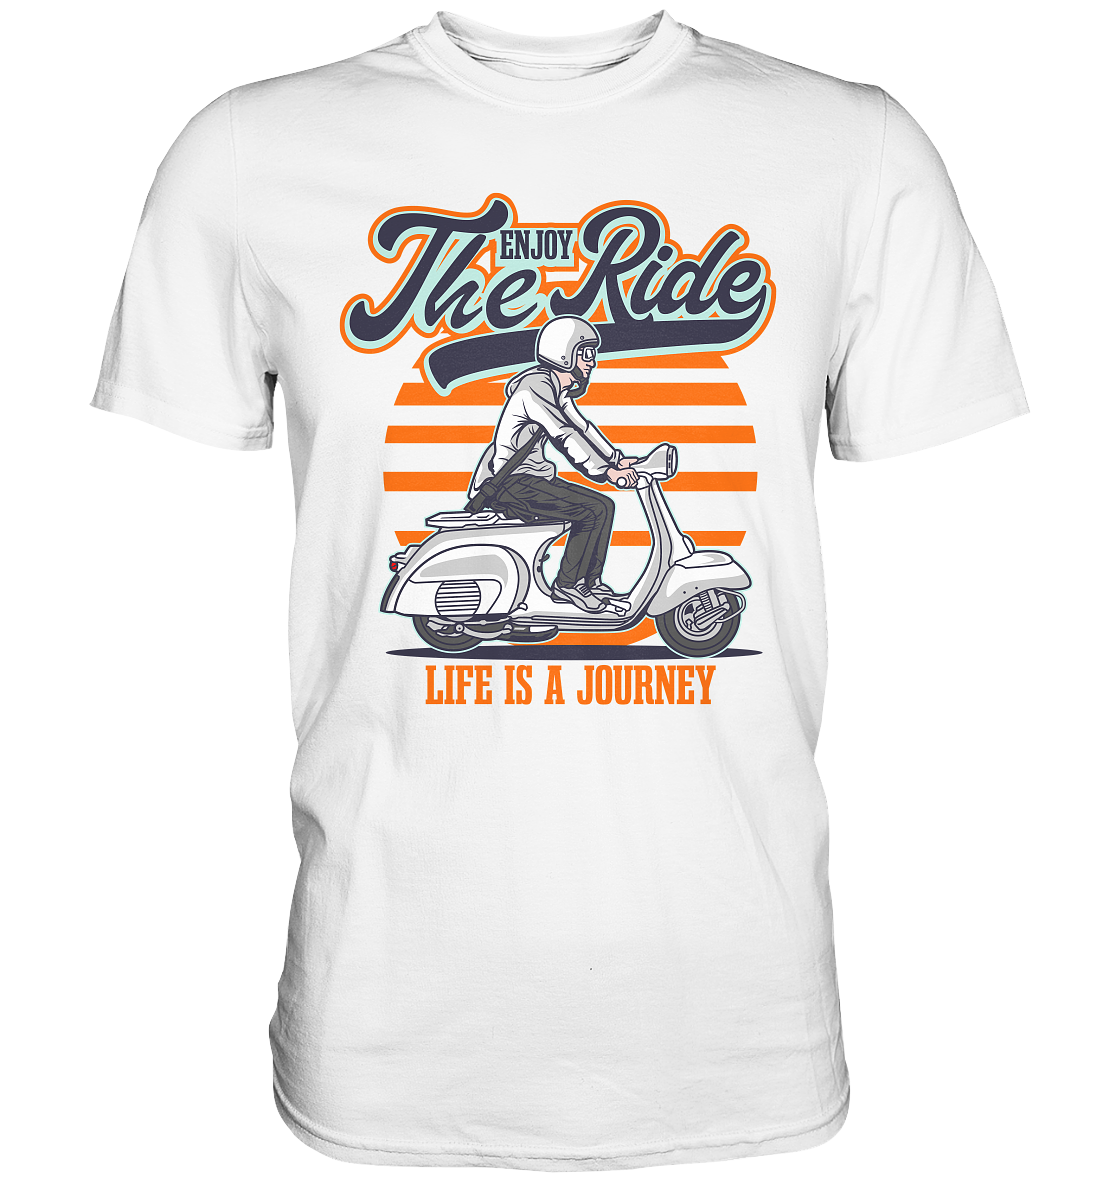 Enjoy the Ride - Premium Unisex Shirt - mehrere Farben